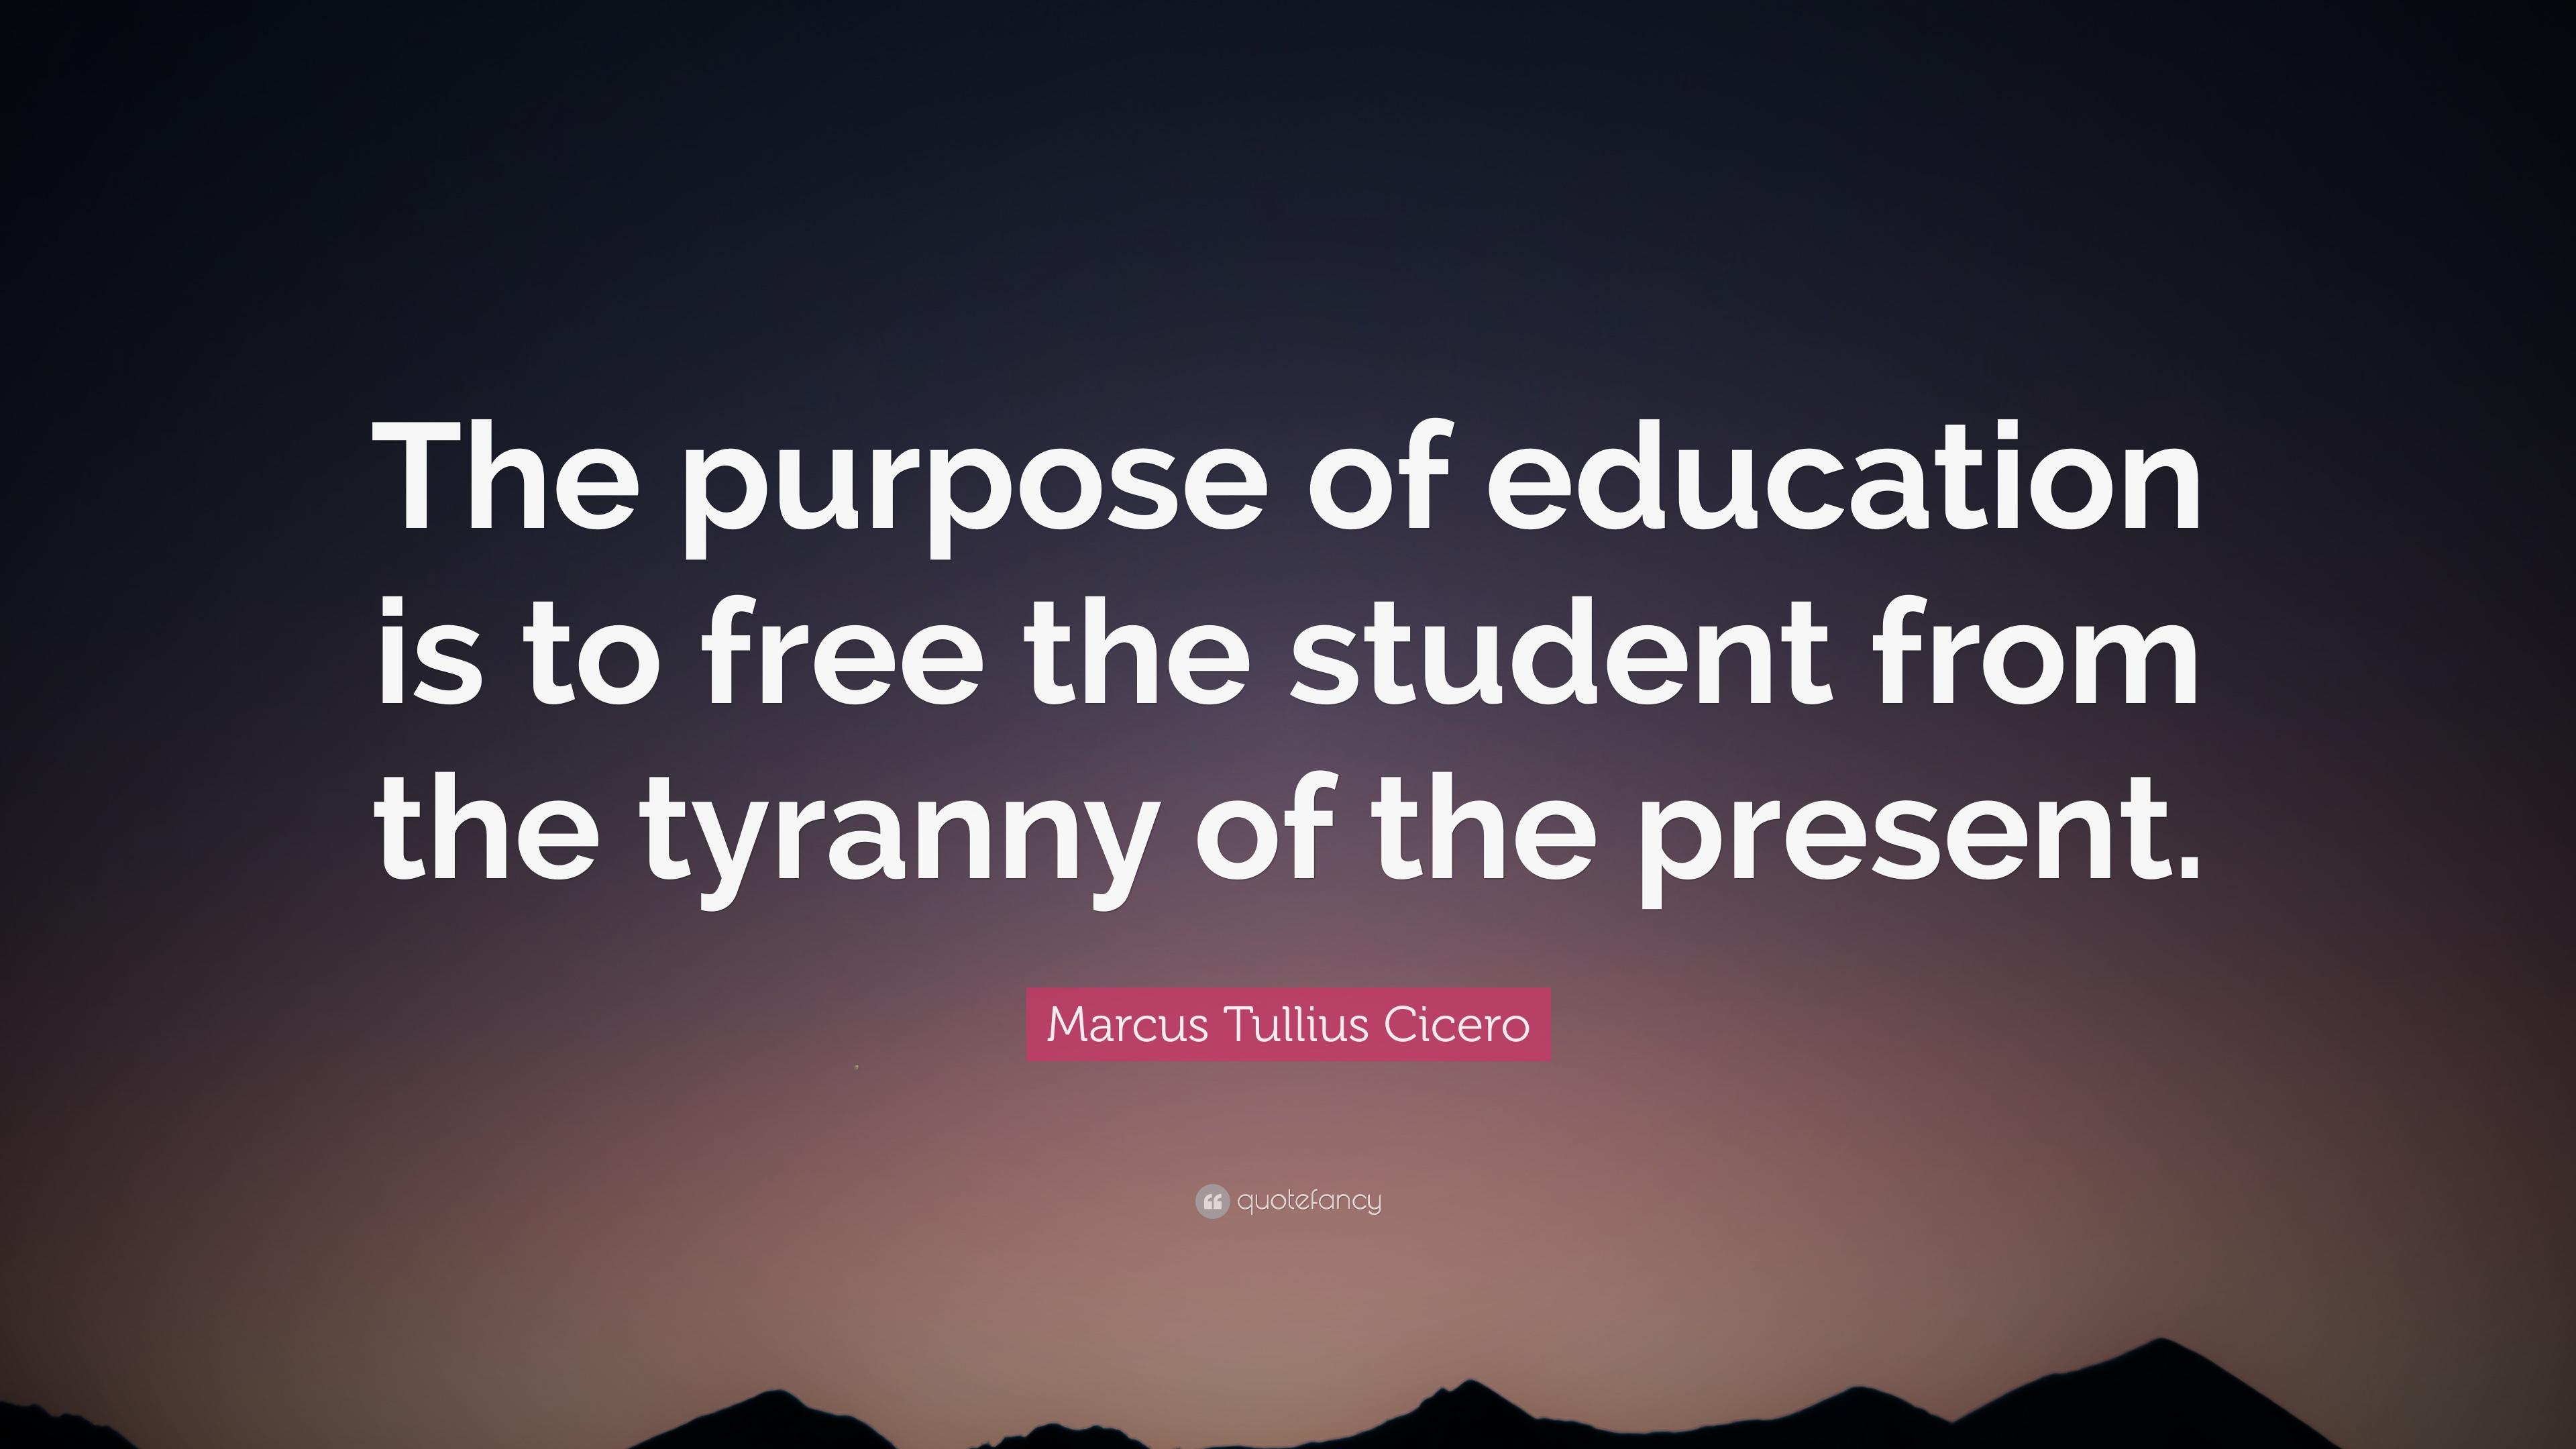 Marcus Tullius Cicero Quote: “The purpose of education is to free